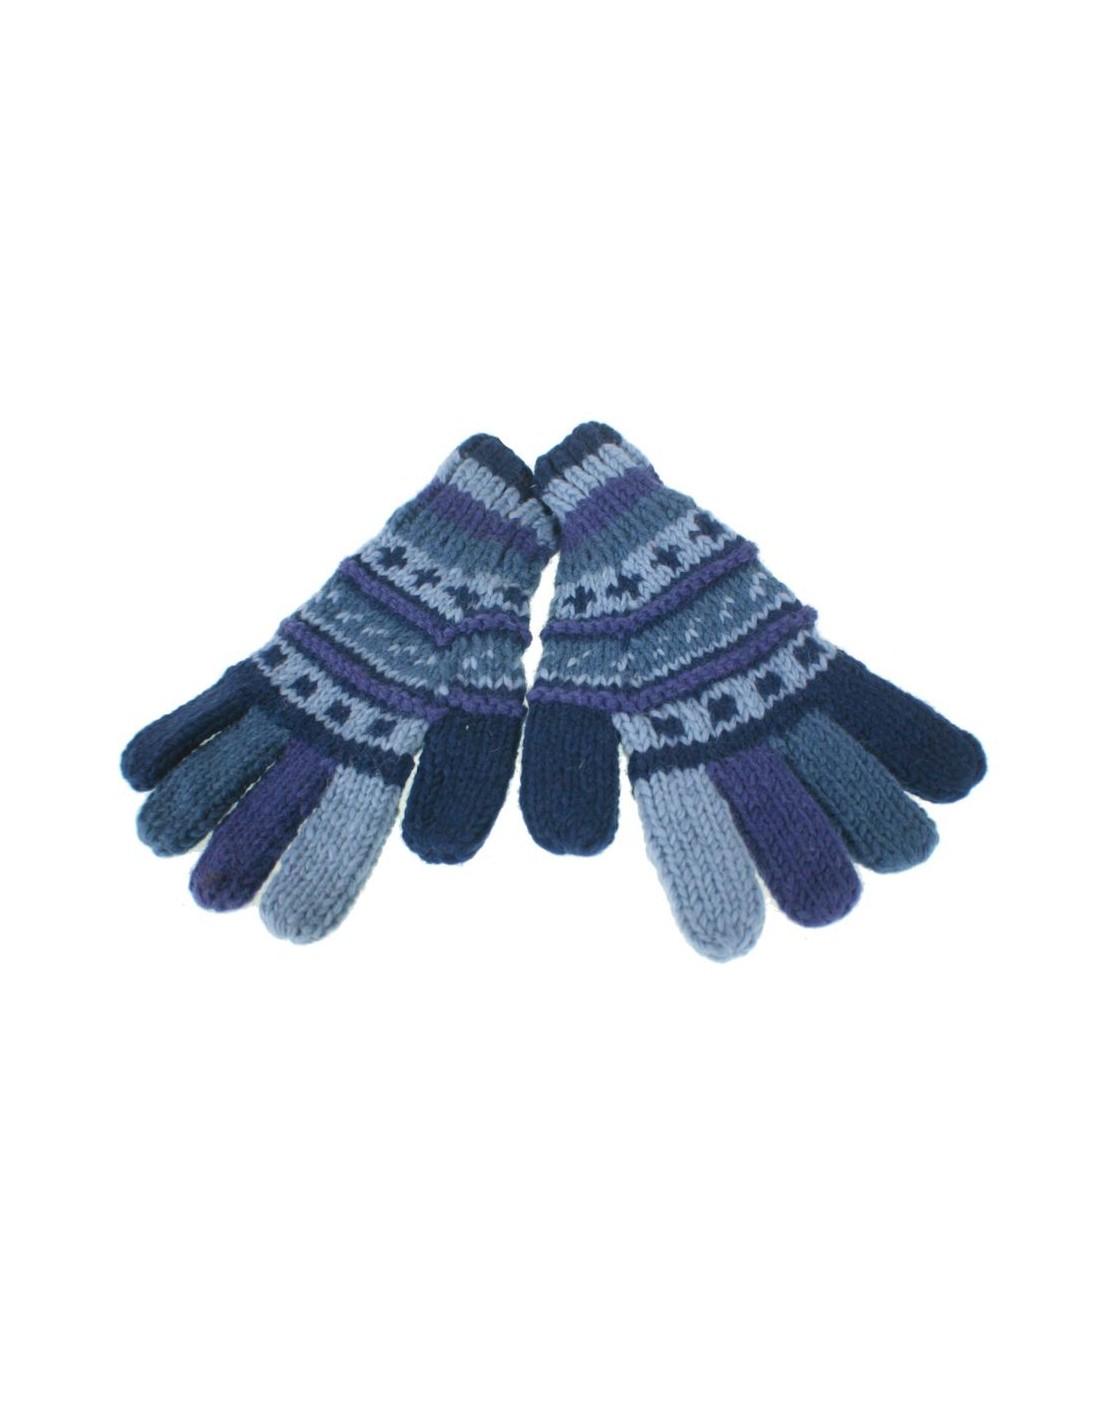 Guantes de lana color azul calientes suaves para invierno guantes unisex artesanal adulto regalo original de estilo hippie